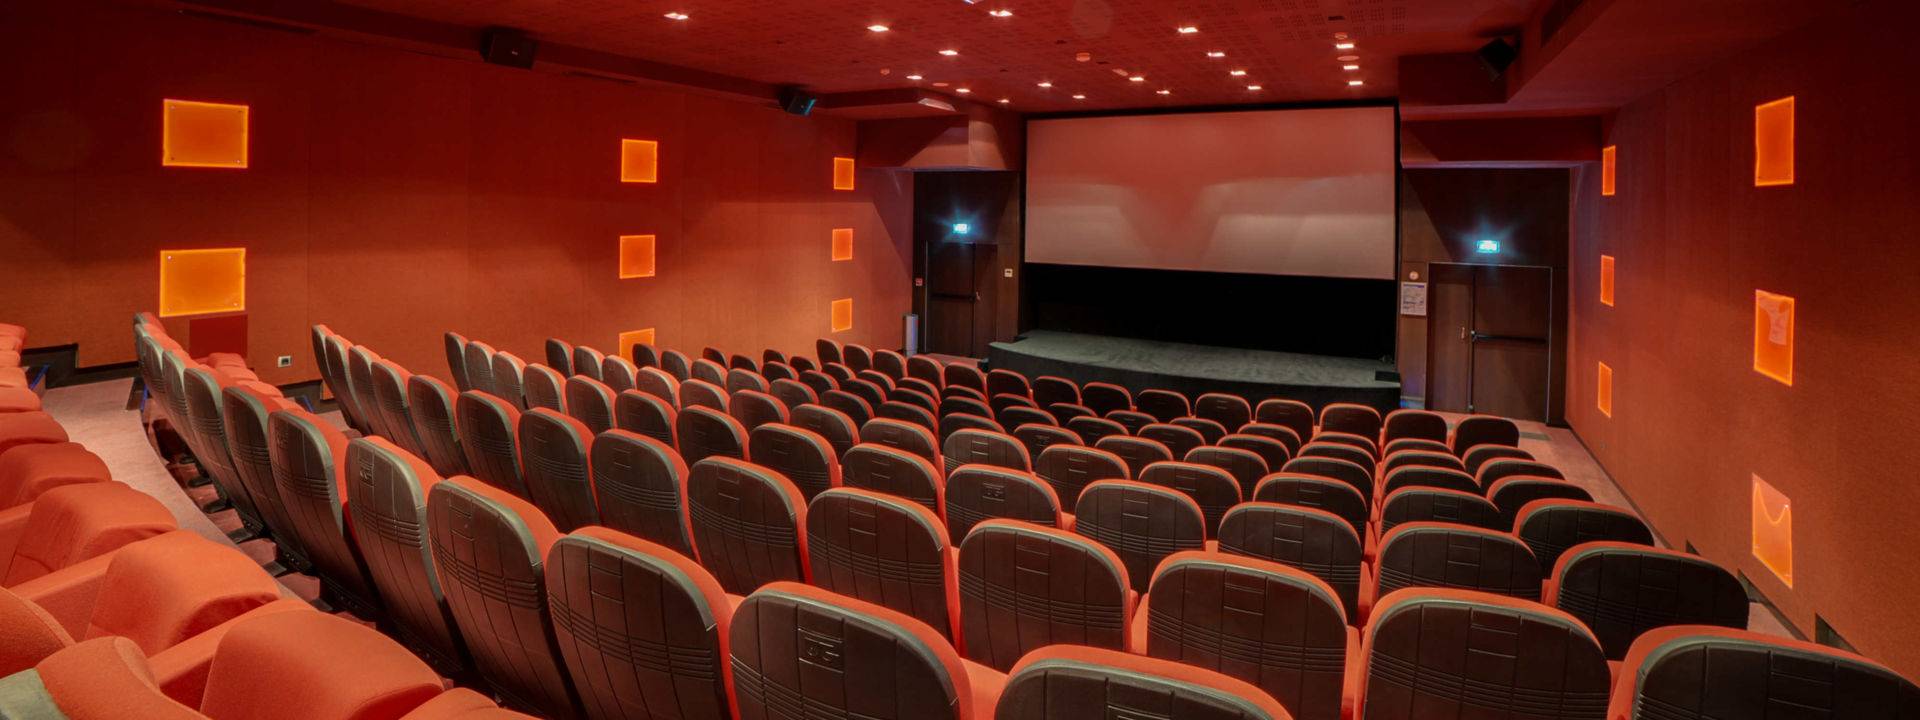 Cinéma casino JOA Bourbonne-les-Bains